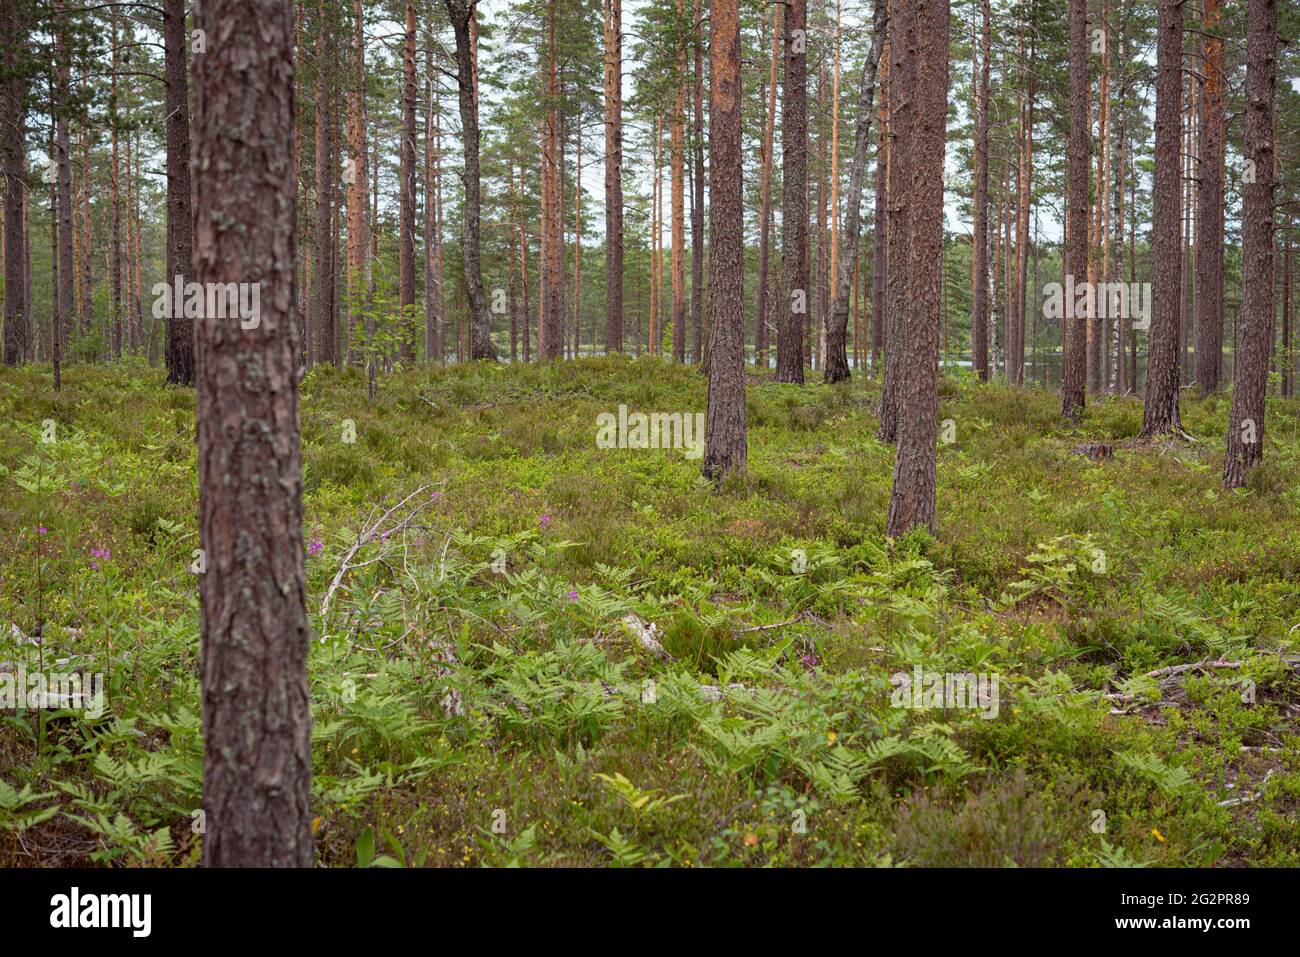 Bosque boreal de arándanos: Pinos con helechos y plantas de arándanos en el suelo. Foto de stock